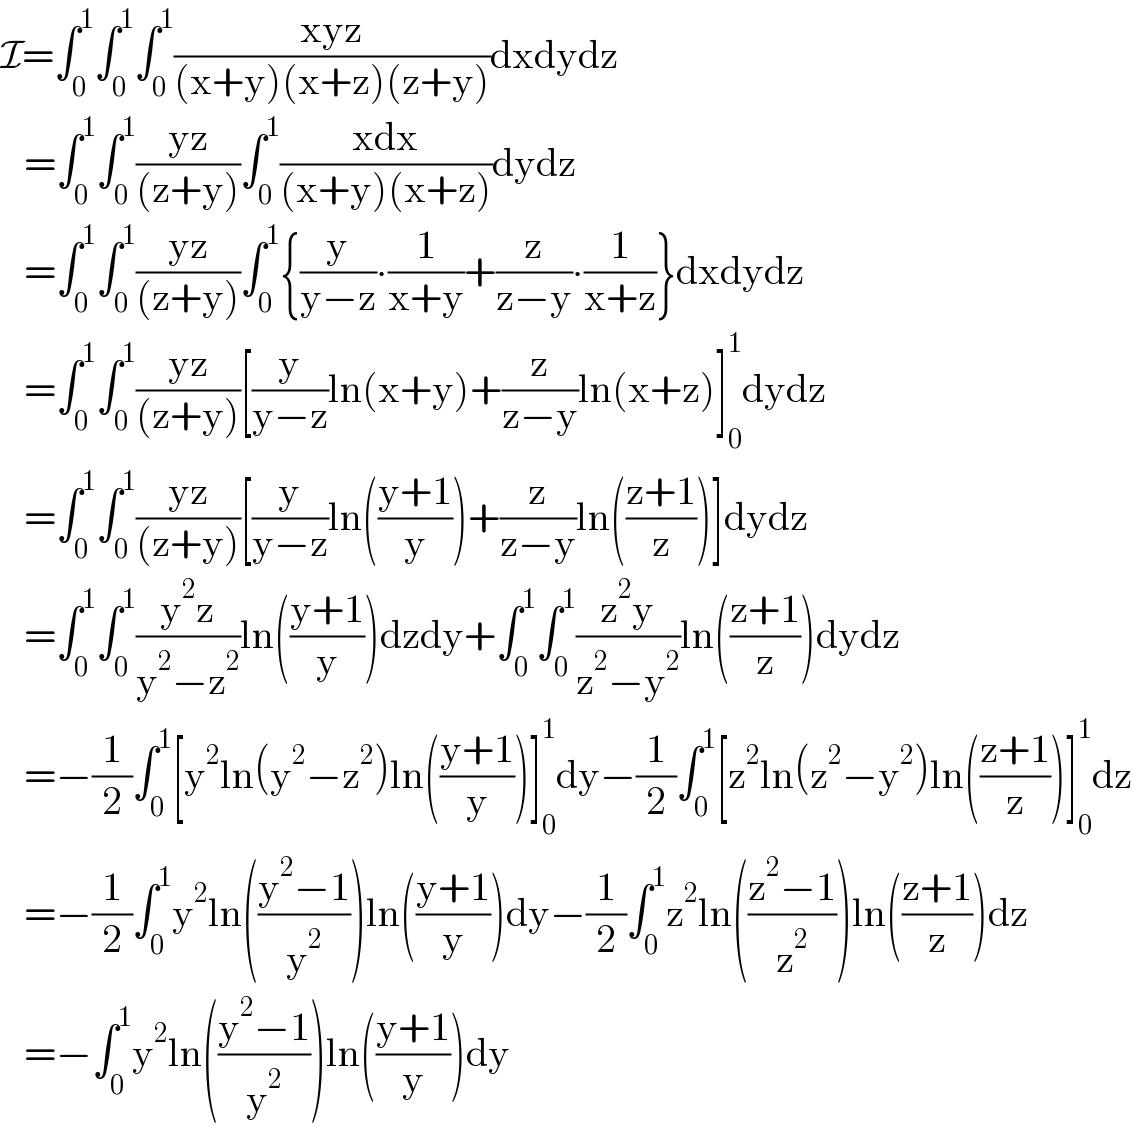 I=∫_0 ^1 ∫_0 ^1 ∫_0 ^1 ((xyz)/((x+y)(x+z)(z+y)))dxdydz     =∫_0 ^1 ∫_0 ^1 ((yz)/((z+y)))∫_0 ^1 ((xdx)/((x+y)(x+z)))dydz     =∫_0 ^1 ∫_0 ^1 ((yz)/((z+y)))∫_0 ^1 {(y/(y−z))∙(1/(x+y))+(z/(z−y))∙(1/(x+z))}dxdydz     =∫_0 ^1 ∫_0 ^1 ((yz)/((z+y)))[(y/(y−z))ln(x+y)+(z/(z−y))ln(x+z)]_0 ^1 dydz     =∫_0 ^1 ∫_0 ^1 ((yz)/((z+y)))[(y/(y−z))ln(((y+1)/y))+(z/(z−y))ln(((z+1)/z))]dydz     =∫_0 ^1 ∫_0 ^1 ((y^2 z)/(y^2 −z^2 ))ln(((y+1)/y))dzdy+∫_0 ^1 ∫_0 ^1 ((z^2 y)/(z^2 −y^2 ))ln(((z+1)/z))dydz     =−(1/2)∫_0 ^1 [y^2 ln(y^2 −z^2 )ln(((y+1)/y))]_0 ^1 dy−(1/2)∫_0 ^1 [z^2 ln(z^2 −y^2 )ln(((z+1)/z))]_0 ^1 dz     =−(1/2)∫_0 ^1 y^2 ln(((y^2 −1)/y^2 ))ln(((y+1)/y))dy−(1/2)∫_0 ^1 z^2 ln(((z^2 −1)/z^2 ))ln(((z+1)/z))dz     =−∫_0 ^1 y^2 ln(((y^2 −1)/y^2 ))ln(((y+1)/y))dy  